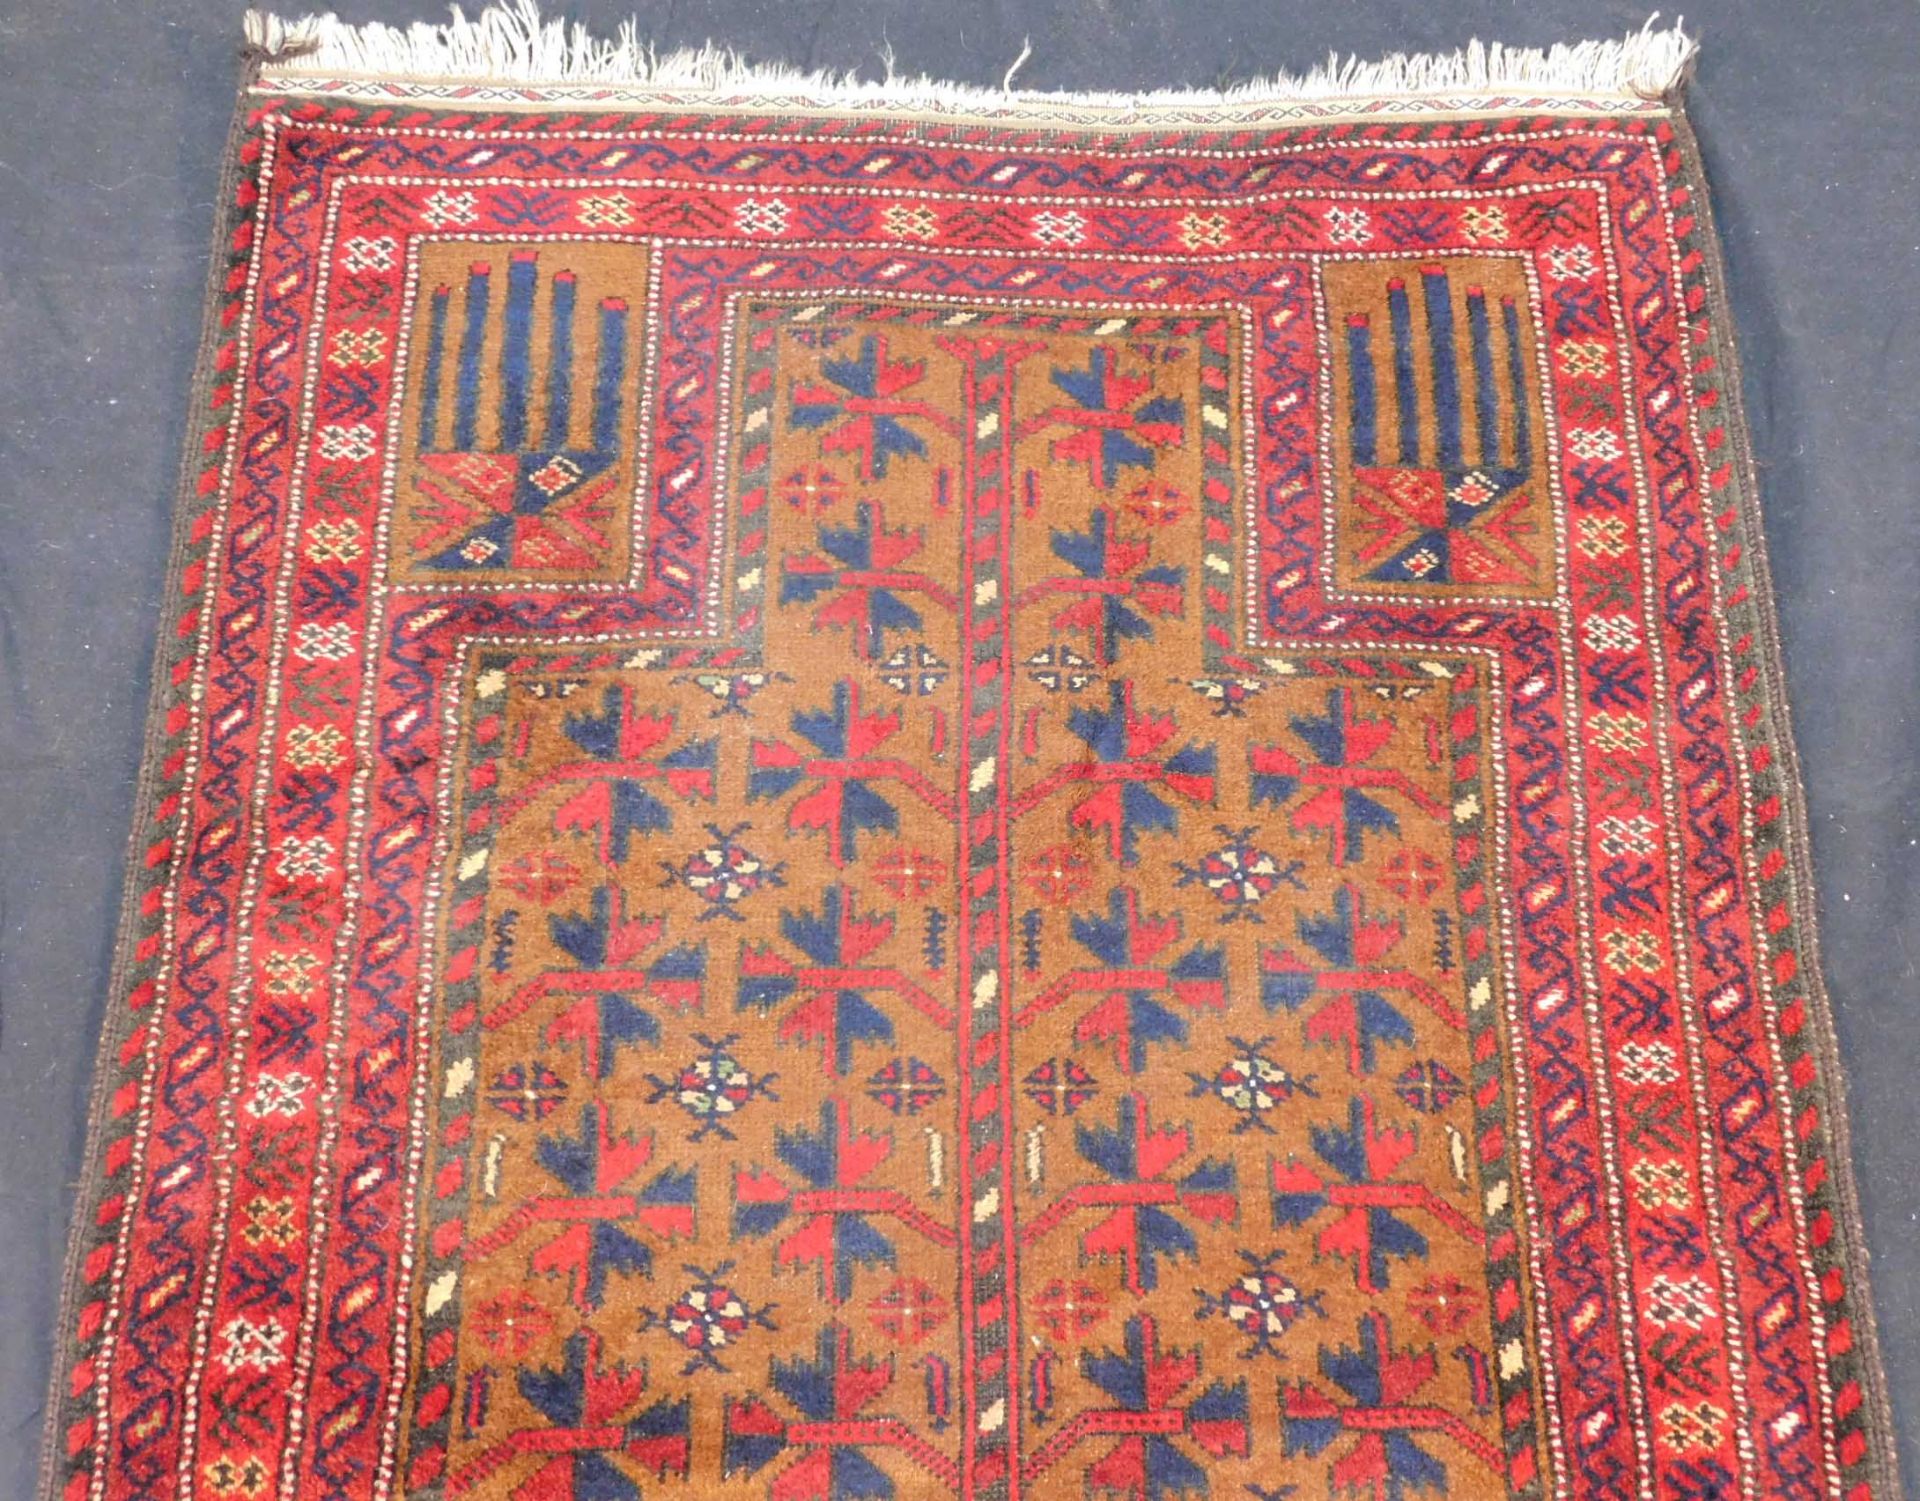 Baluchi prayer rug. Around 60 - 90 years old. - Image 3 of 5